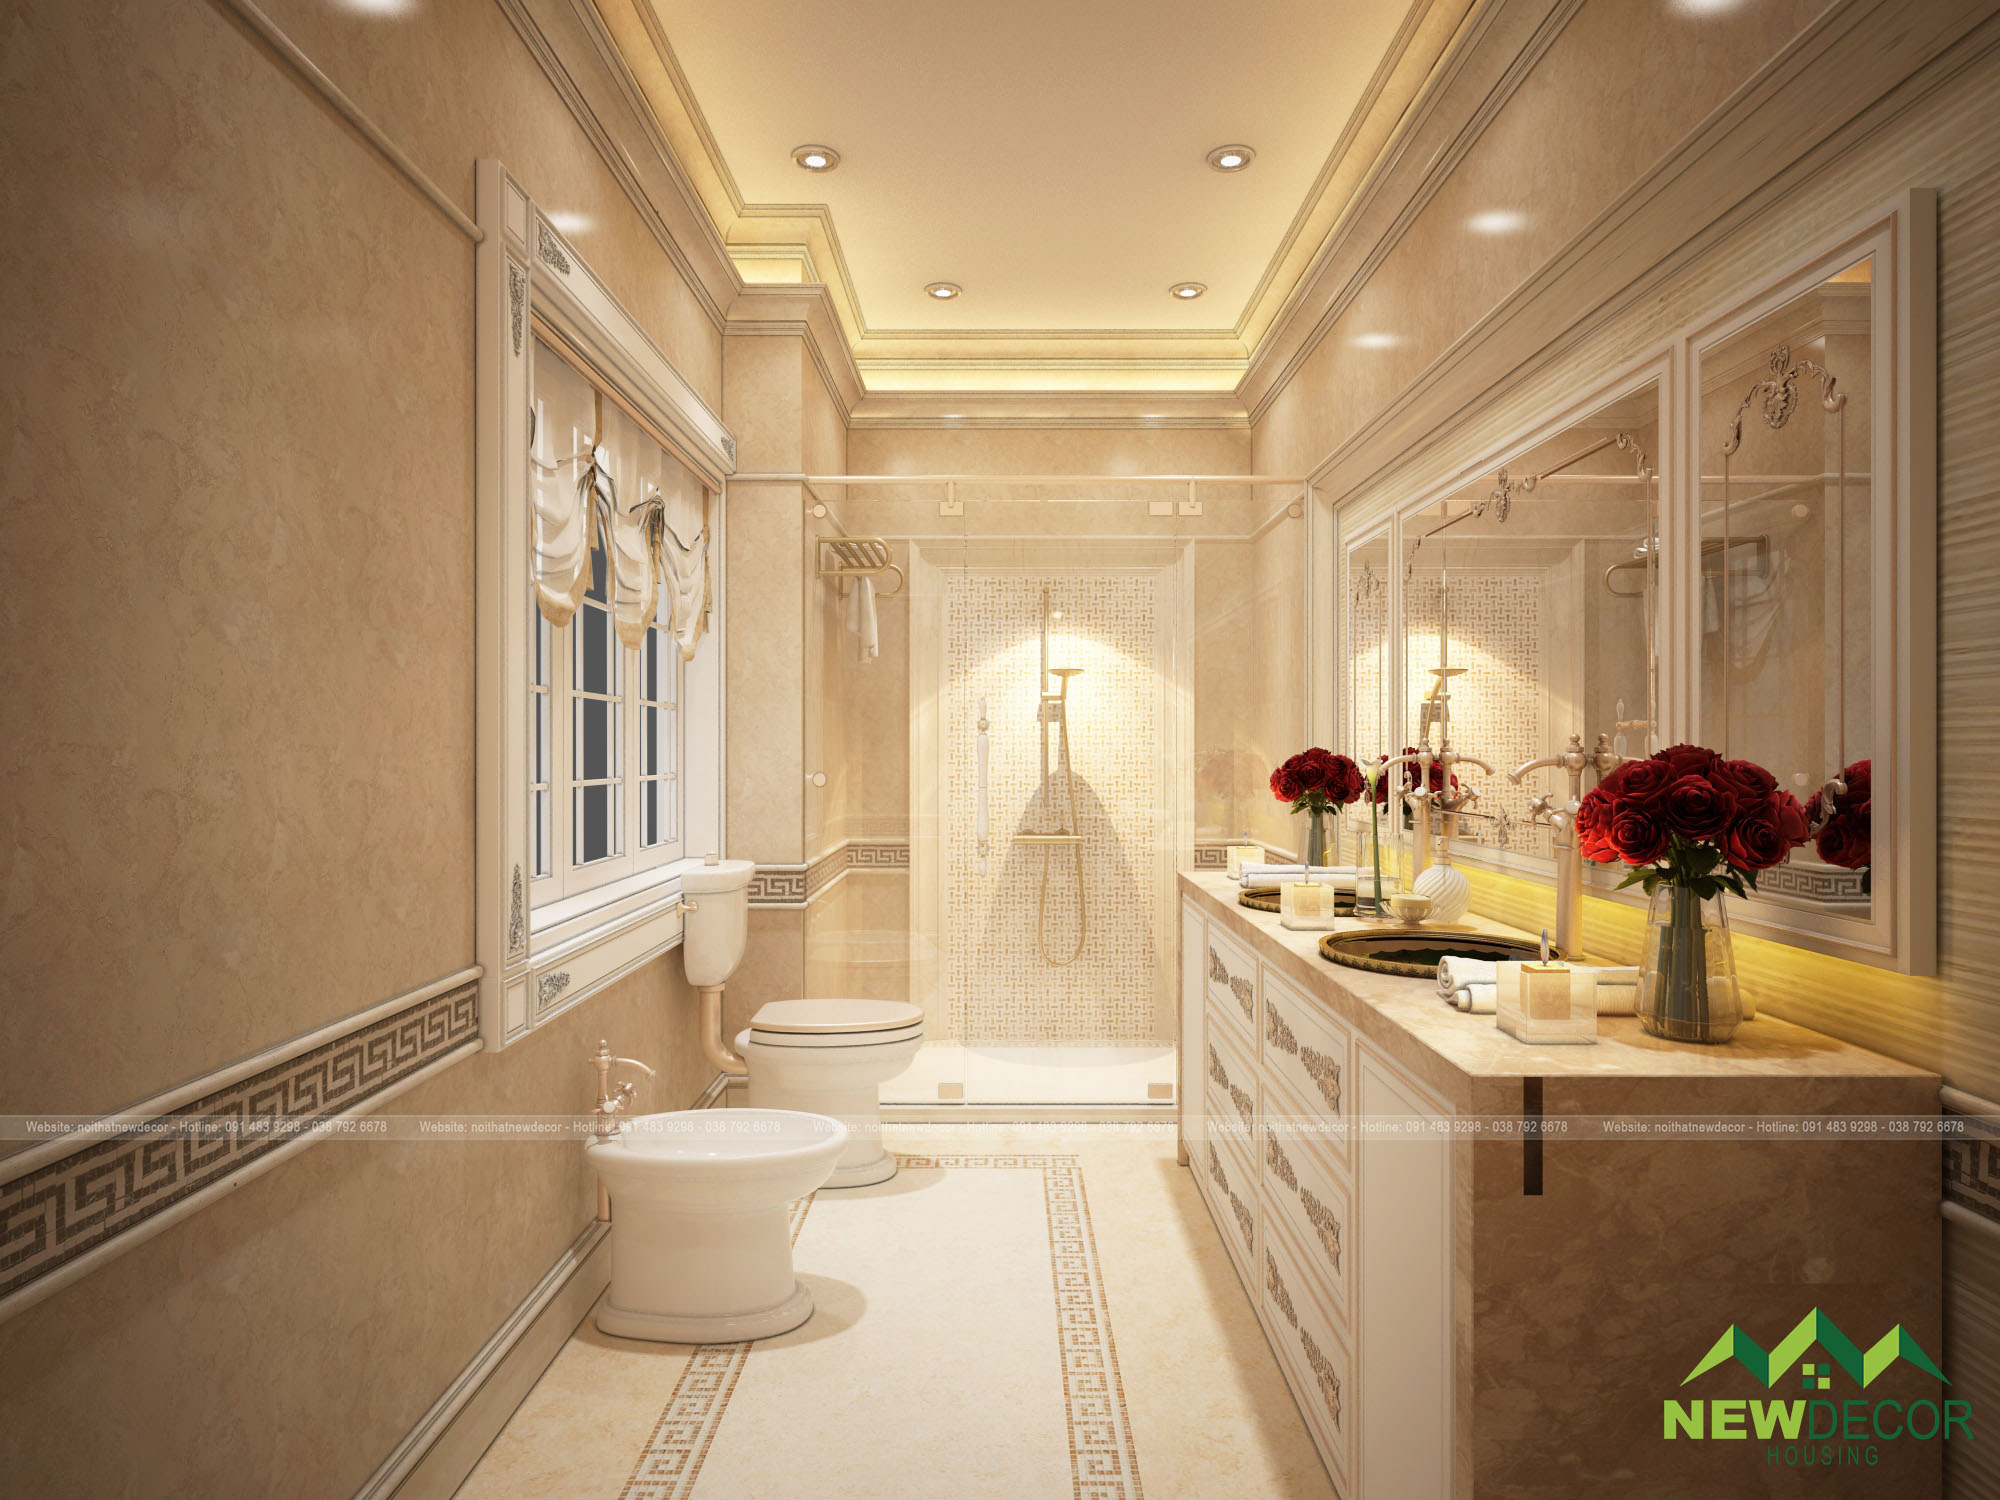 Phòng tắm trong thiết kế còn được bài trí thêm hoa hồng sang trọng.